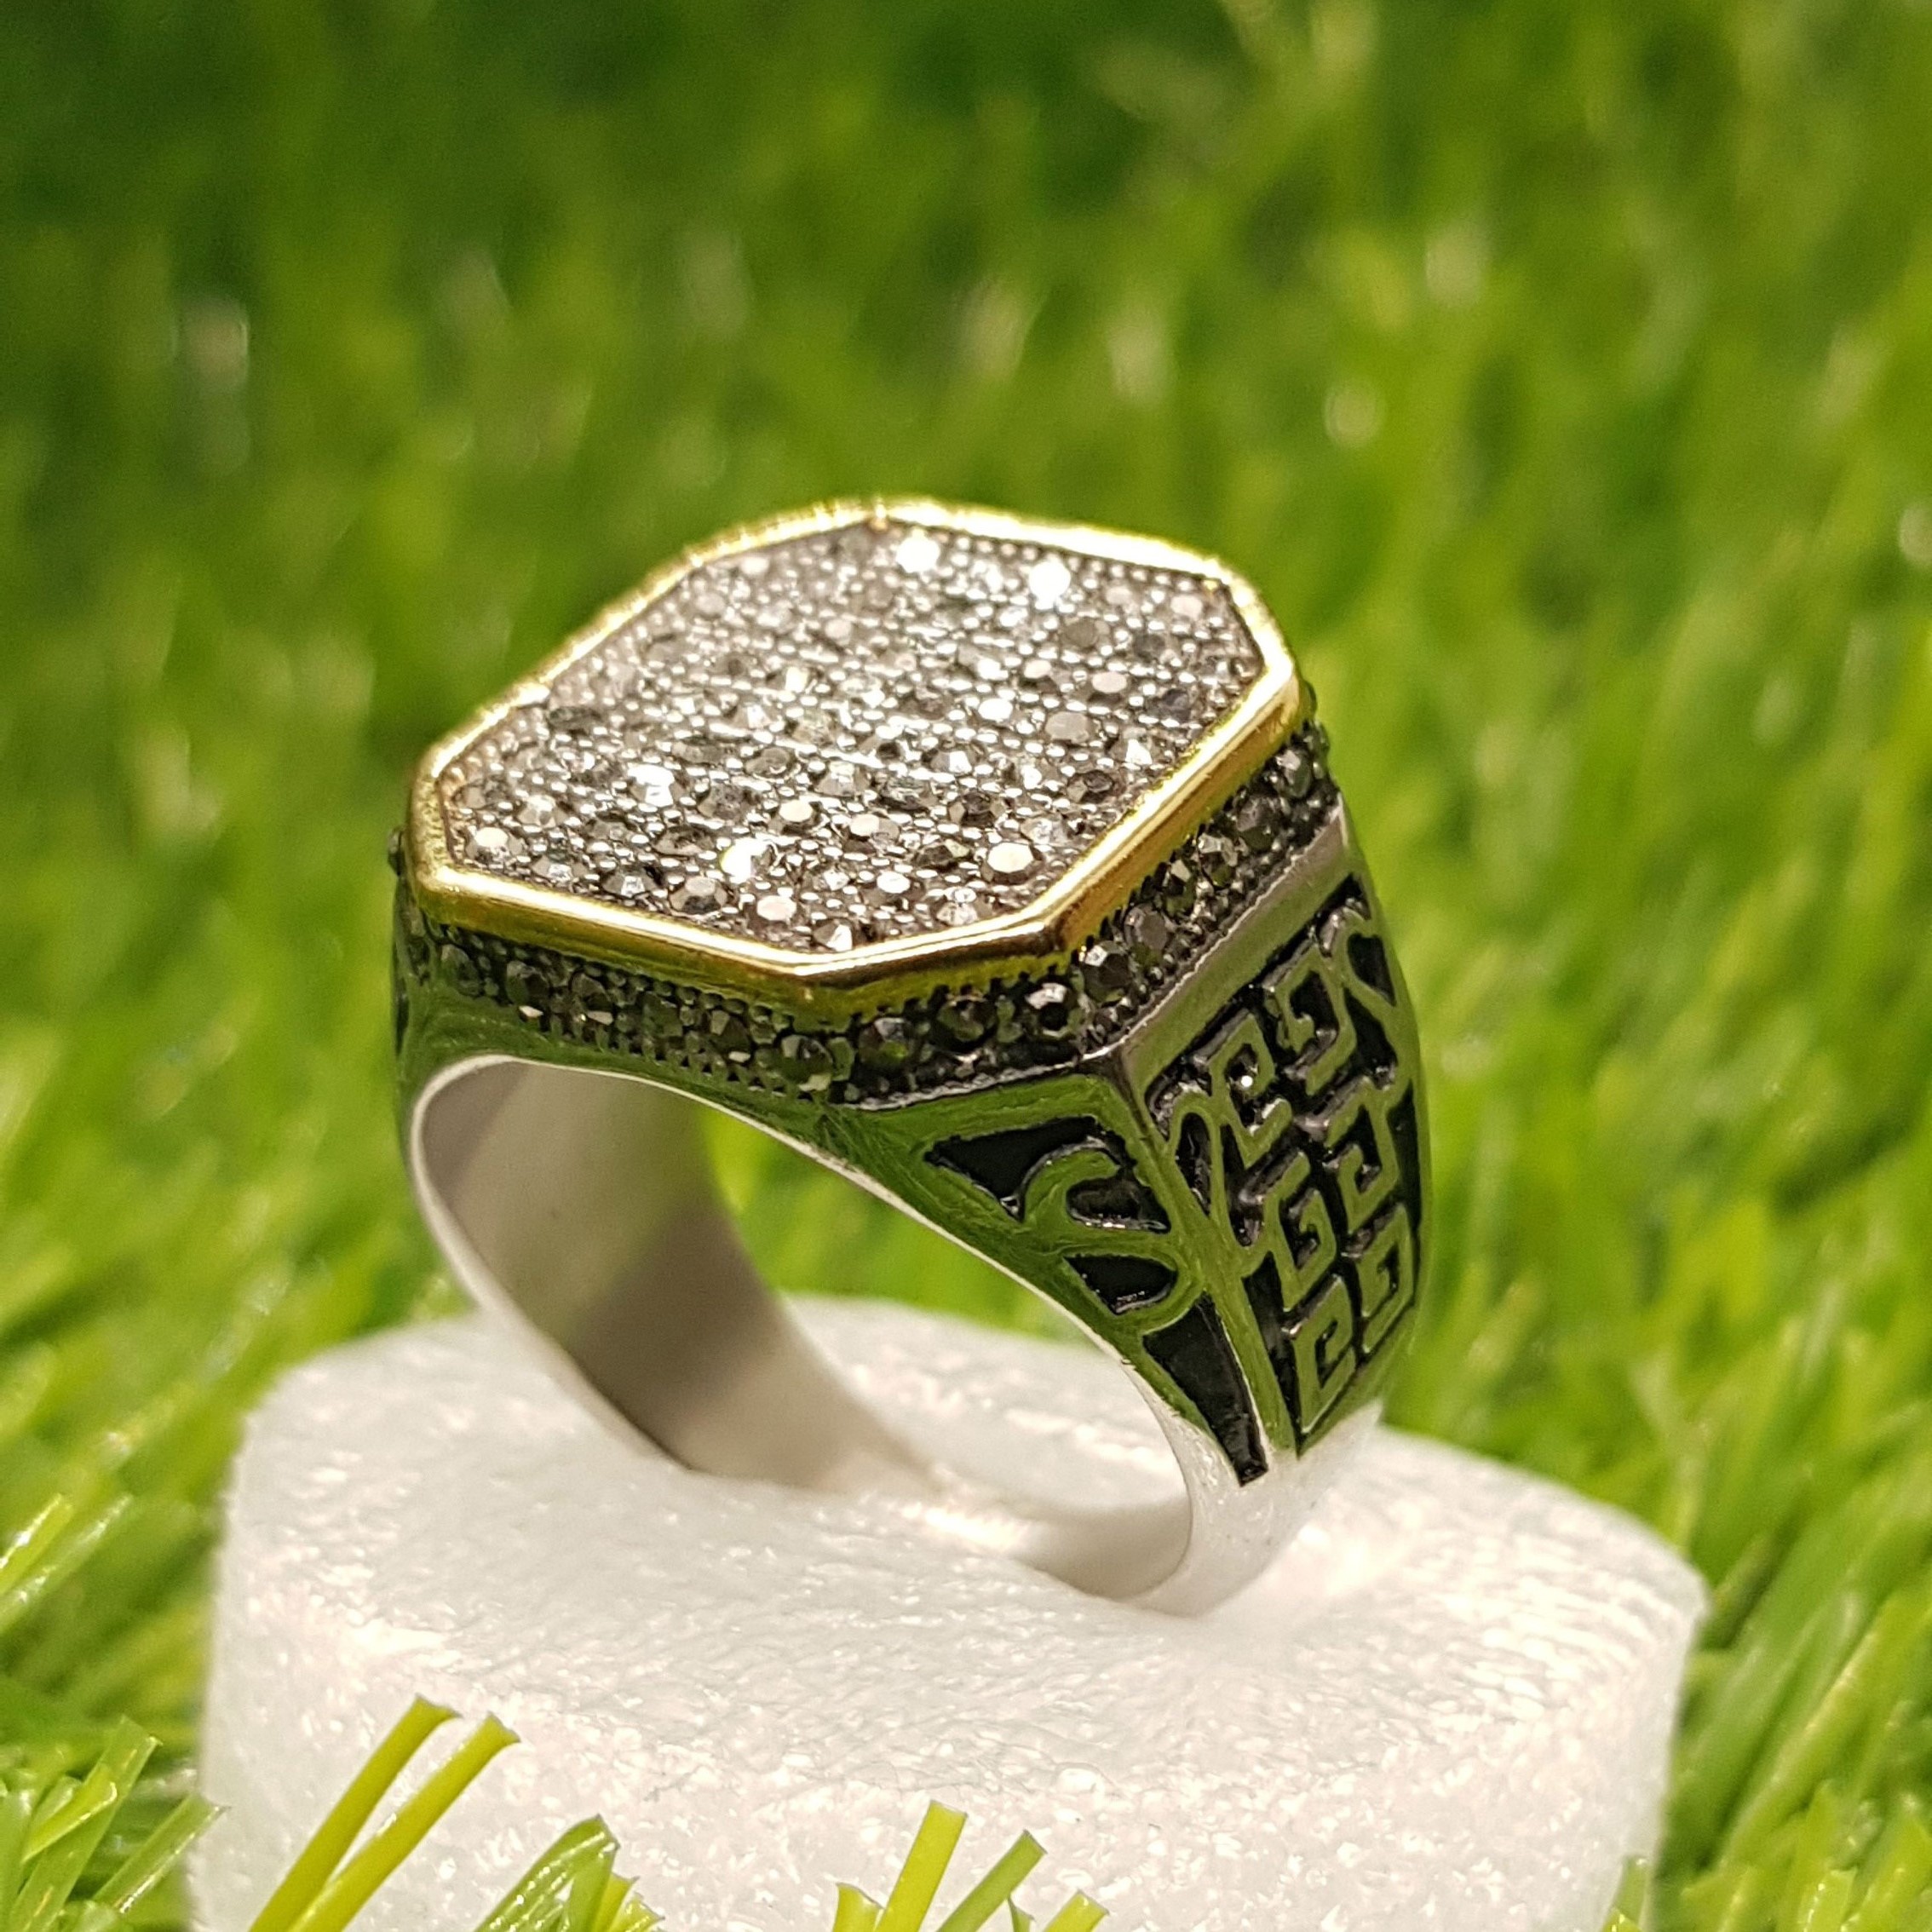 Glamorous Nine Stone Diamond Finger Ring For Men